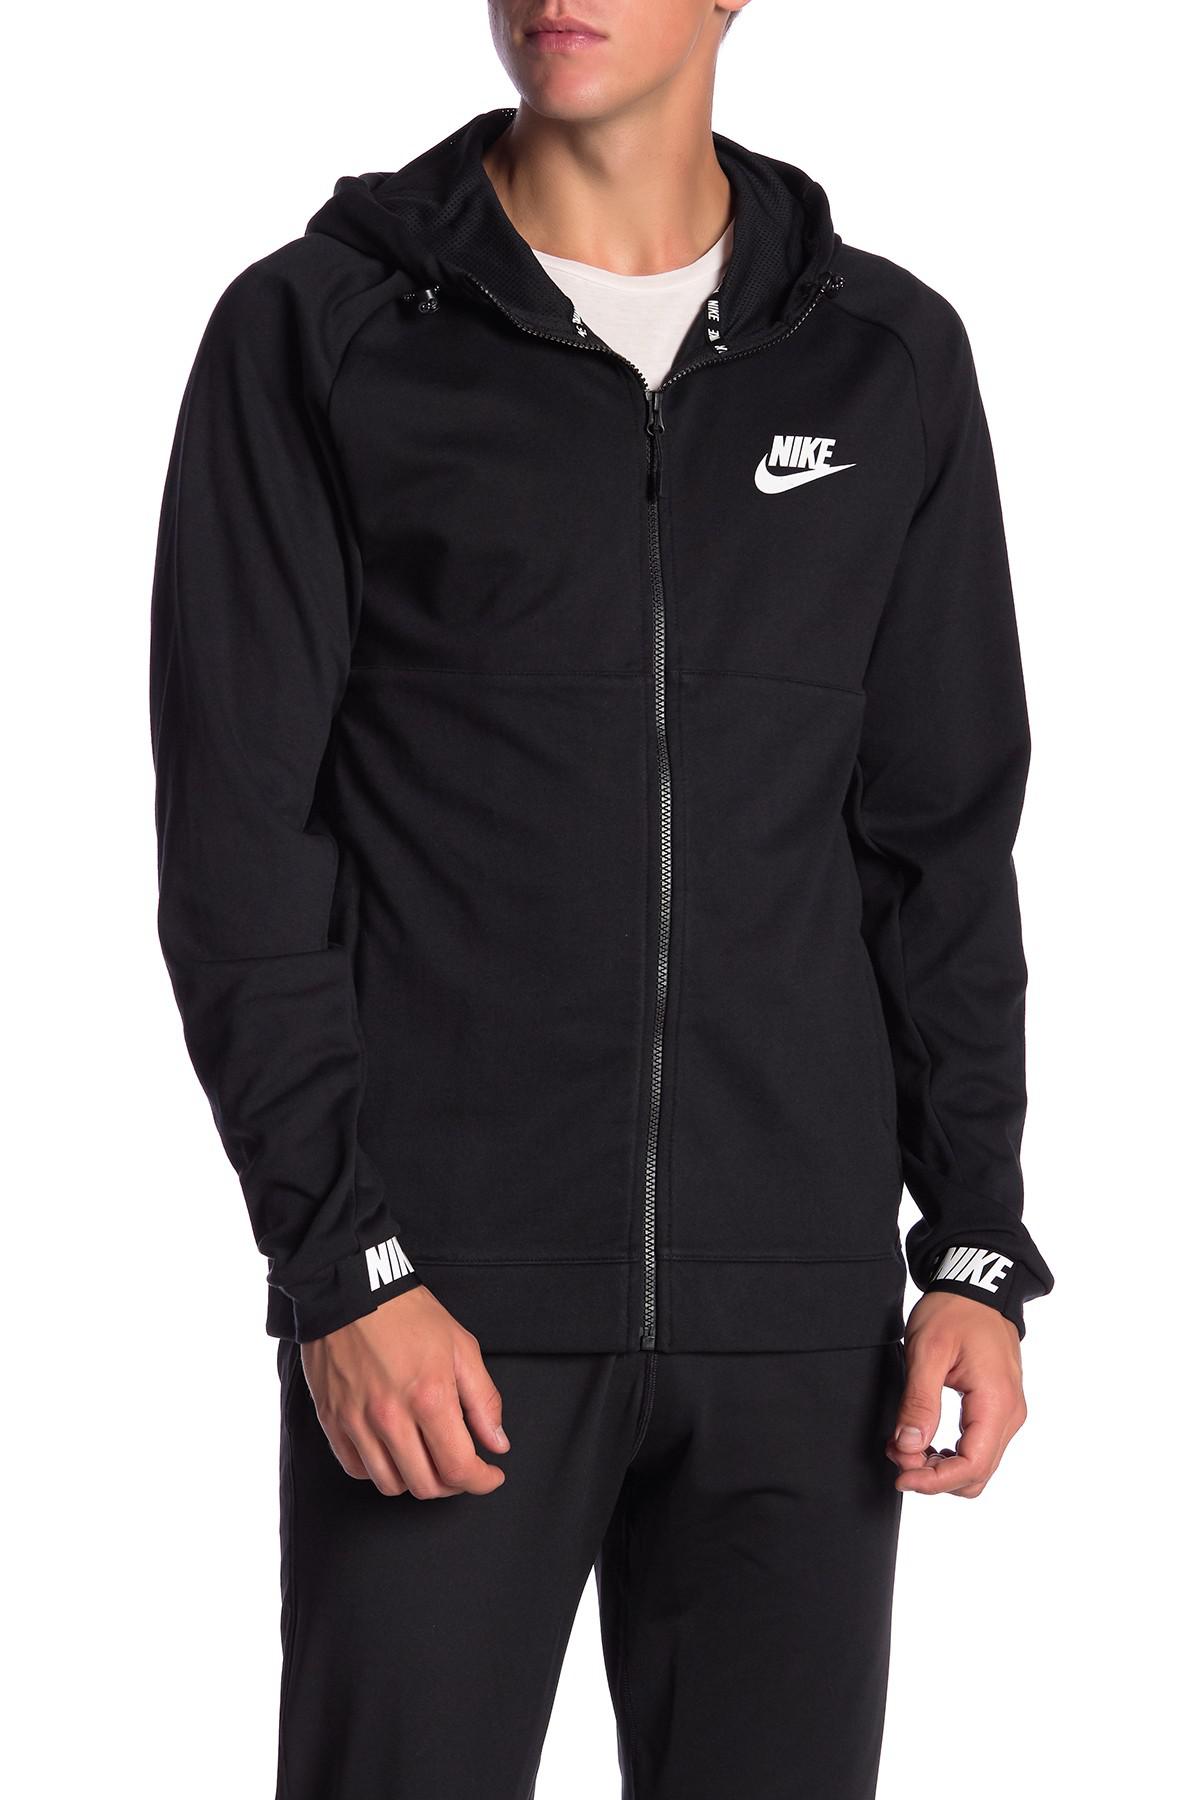 Nike Av15 Fleece Hoodie In Black White Black For Men Lyst [ 1800 x 1200 Pixel ]